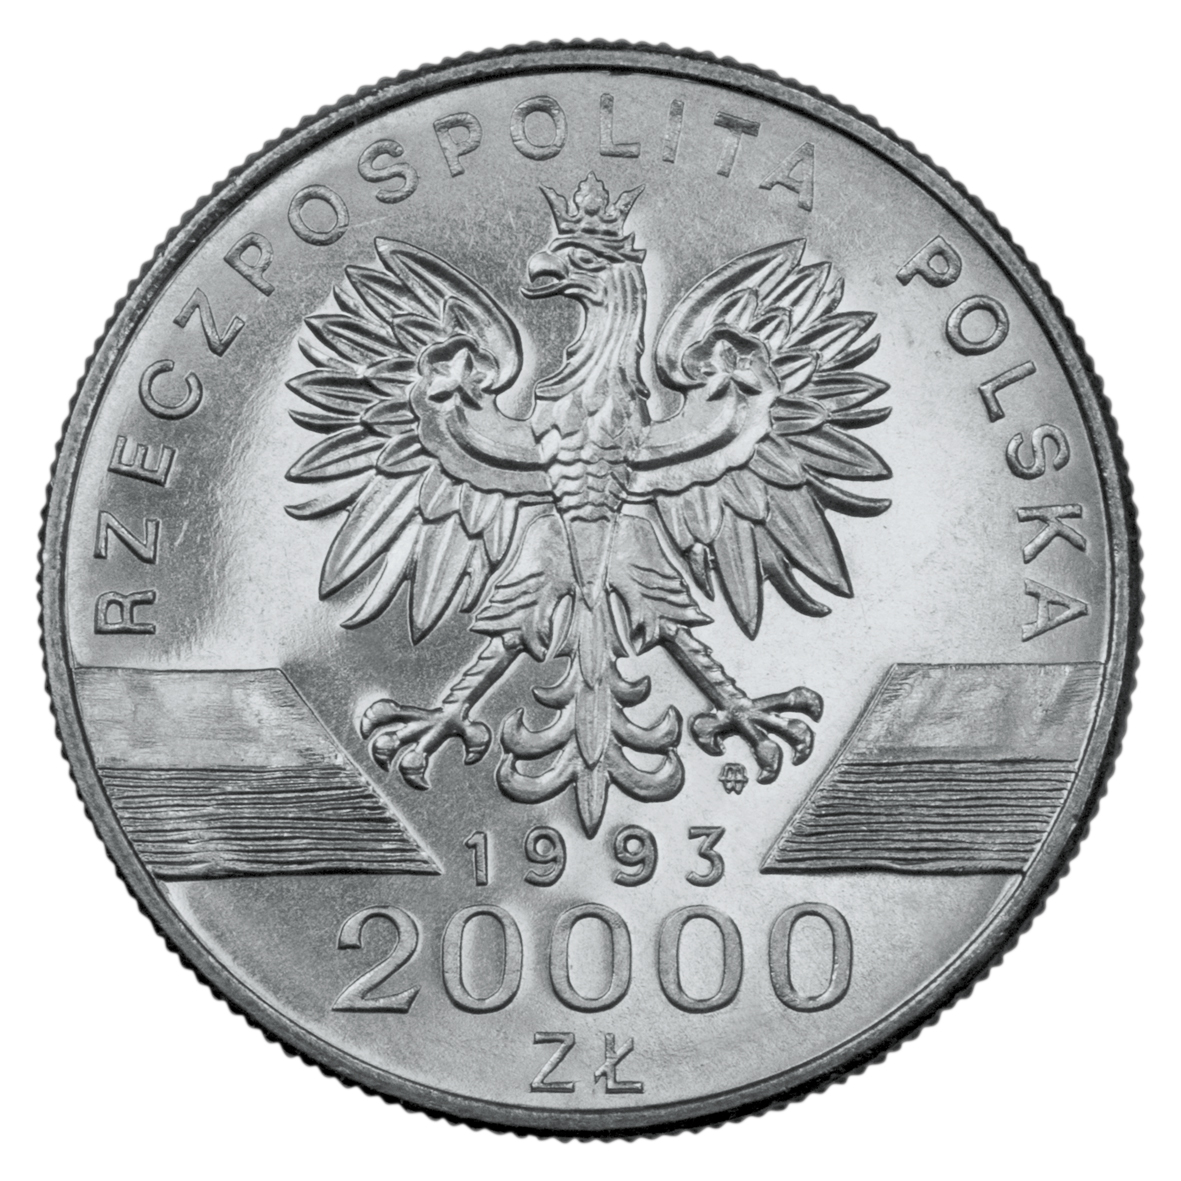 20000zl-jaskolka-awers-monety